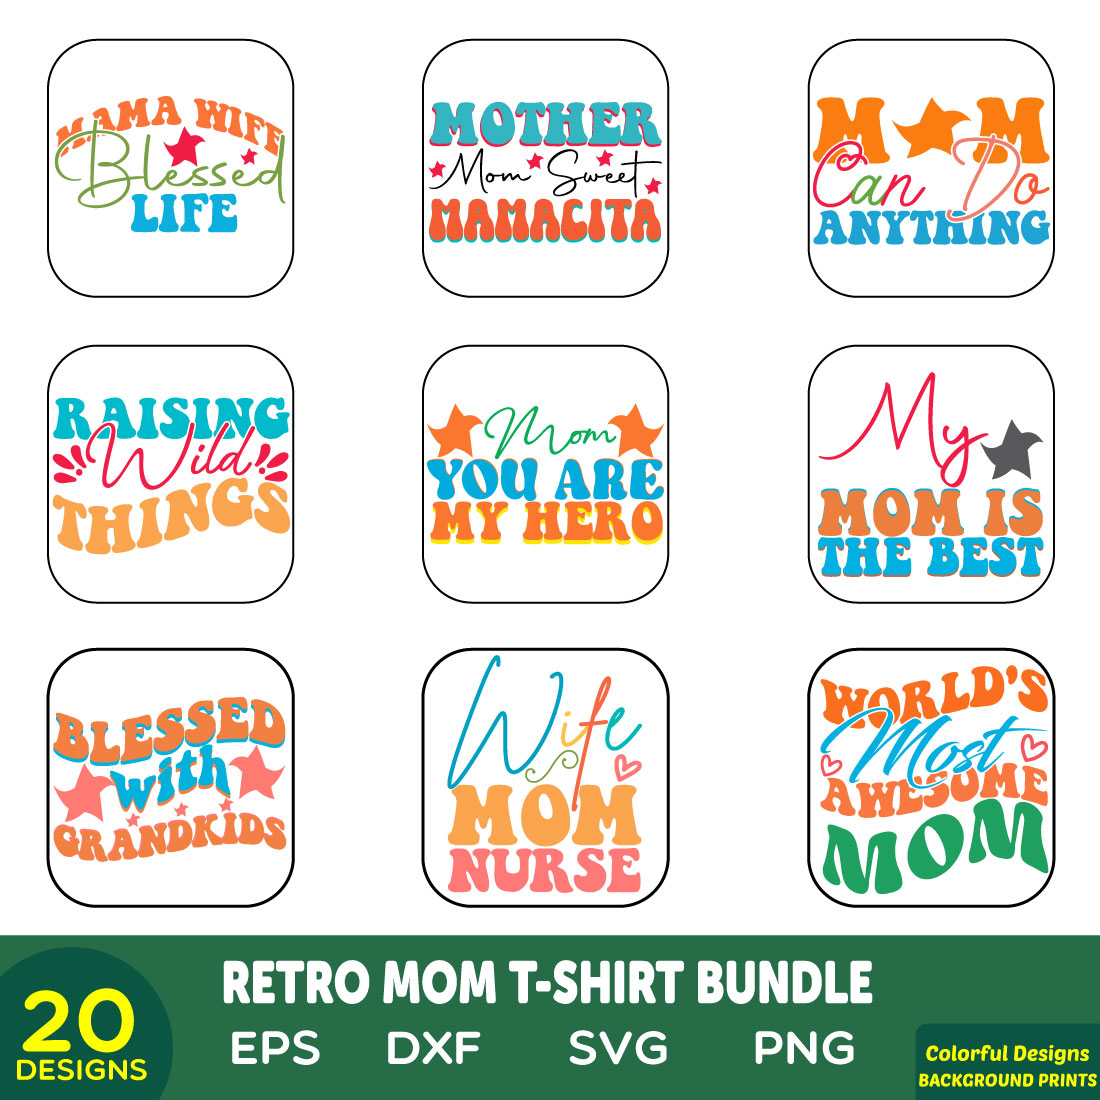 retro mom t-shirt bundle cover image.